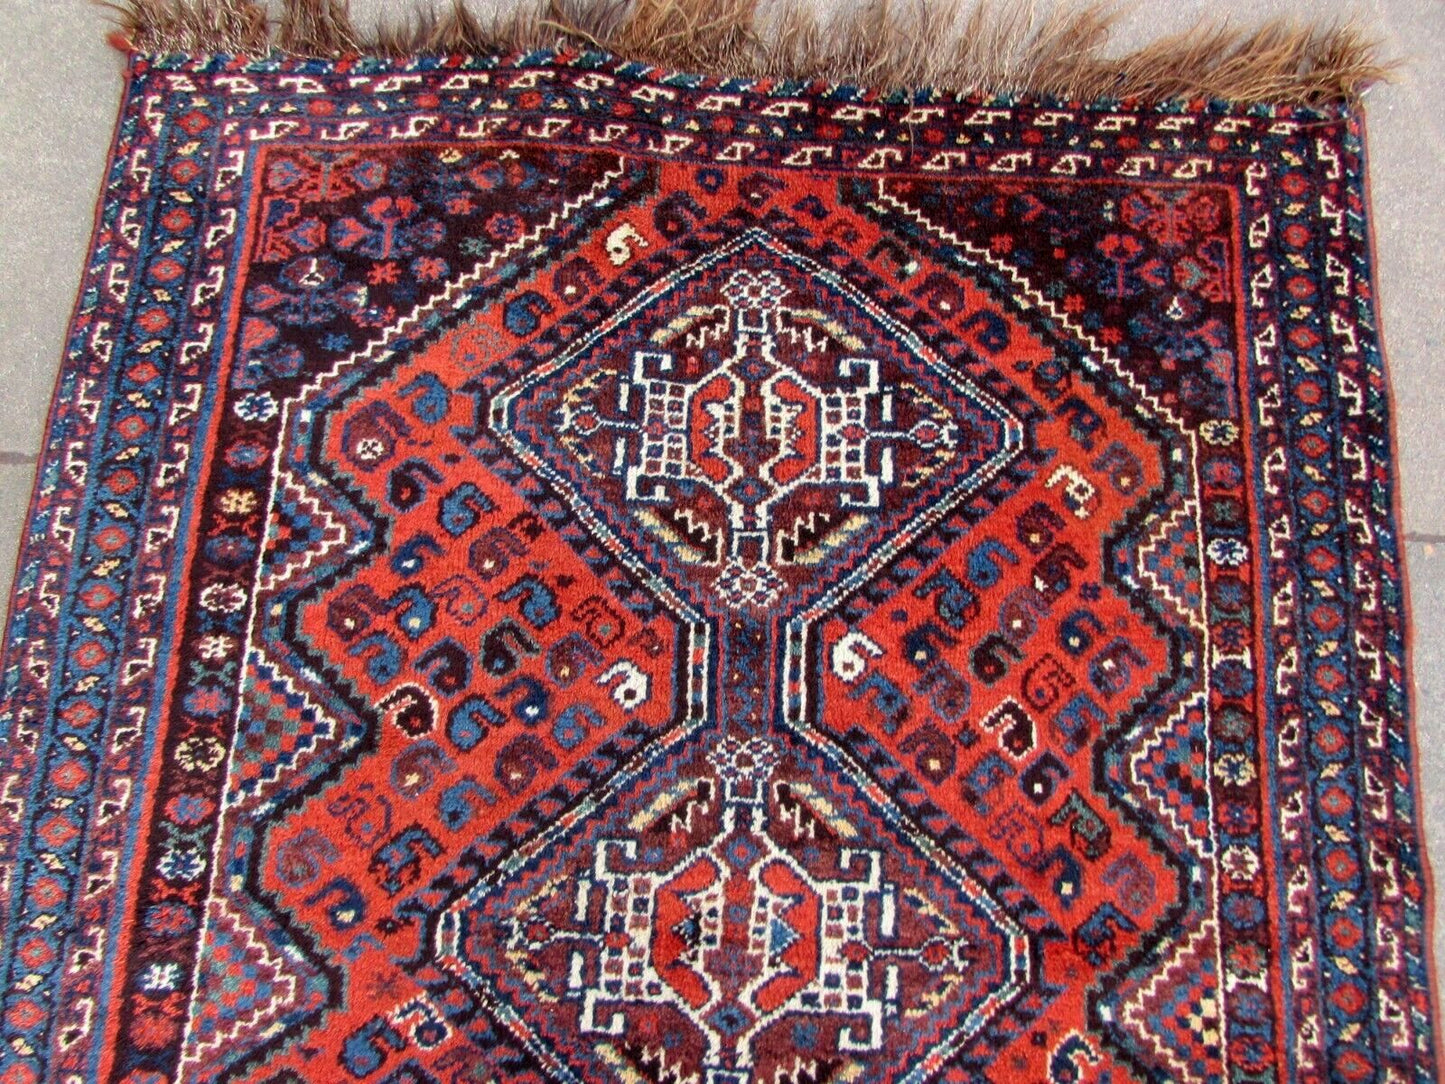 Handmade antique Persian Shiraz rug 1910s